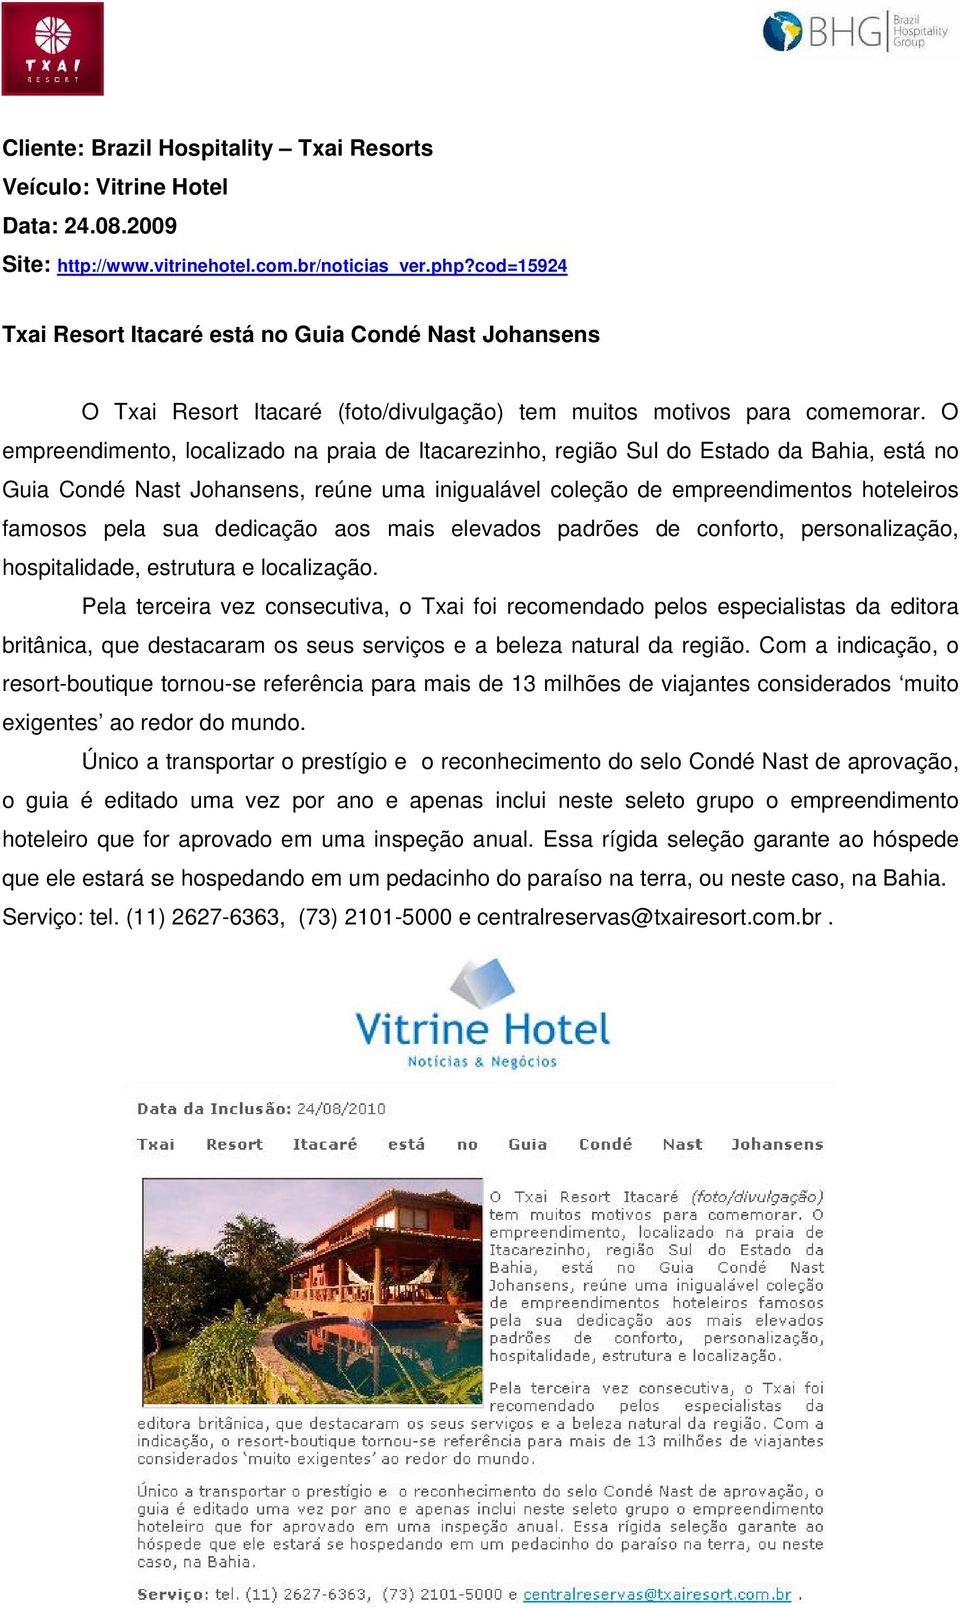 O empreendimento, localizado na praia de Itacarezinho, região Sul do Estado da Bahia, está no Guia Condé Nast Johansens, reúne uma inigualável coleção de empreendimentos hoteleiros famosos pela sua